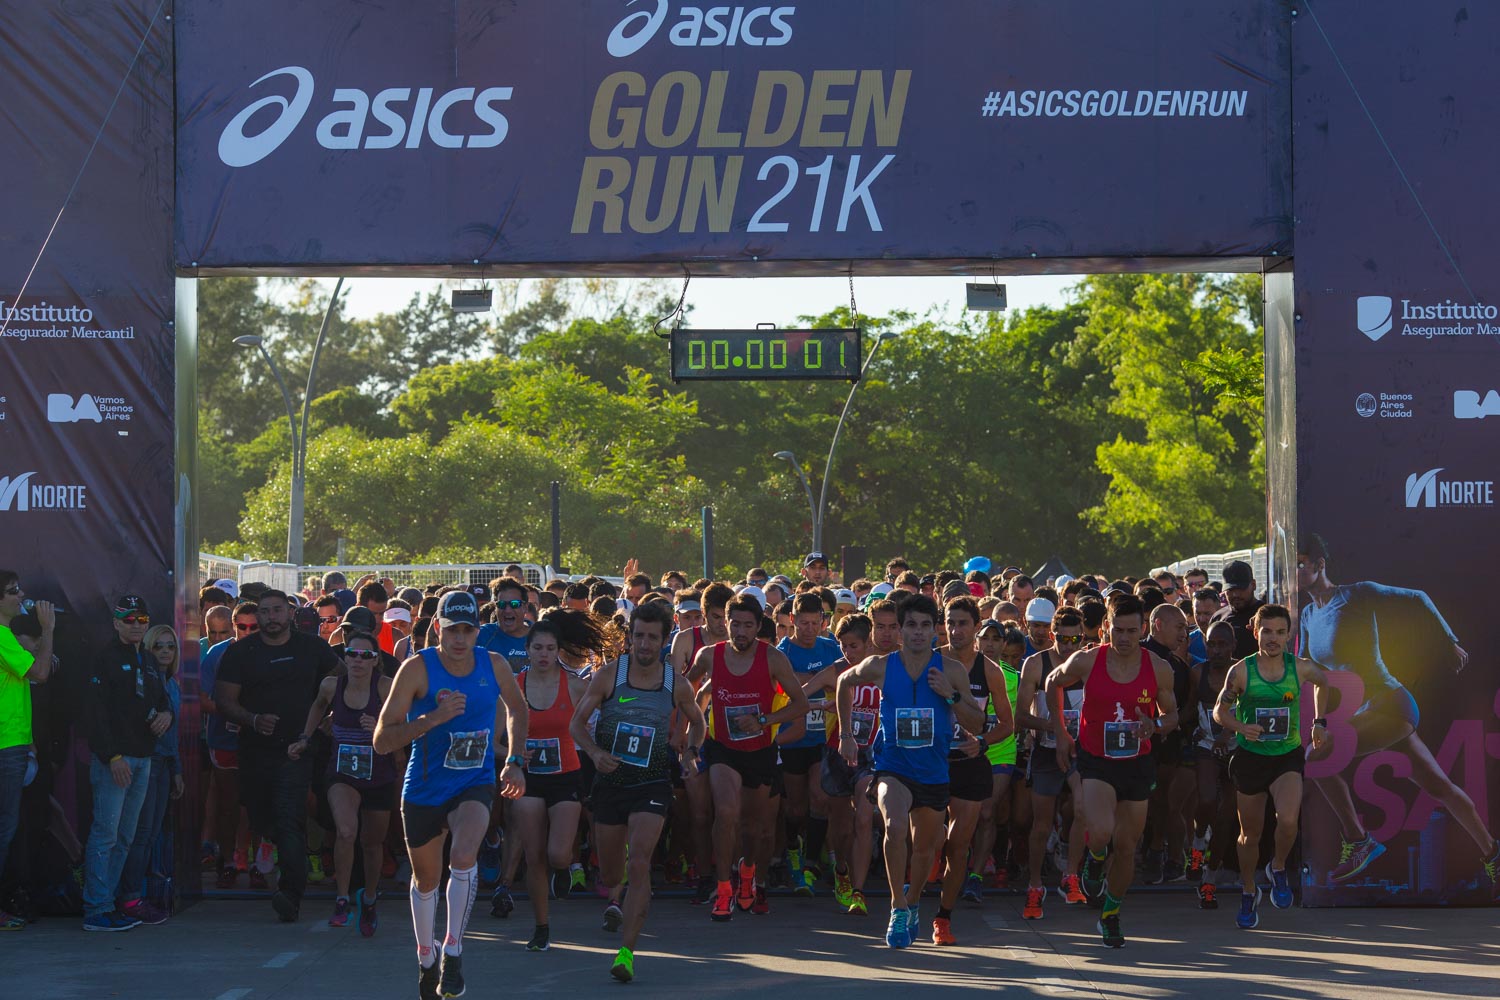 stropdas vice versa Consumeren Resultados: Asics Golden Run Buenos Aires